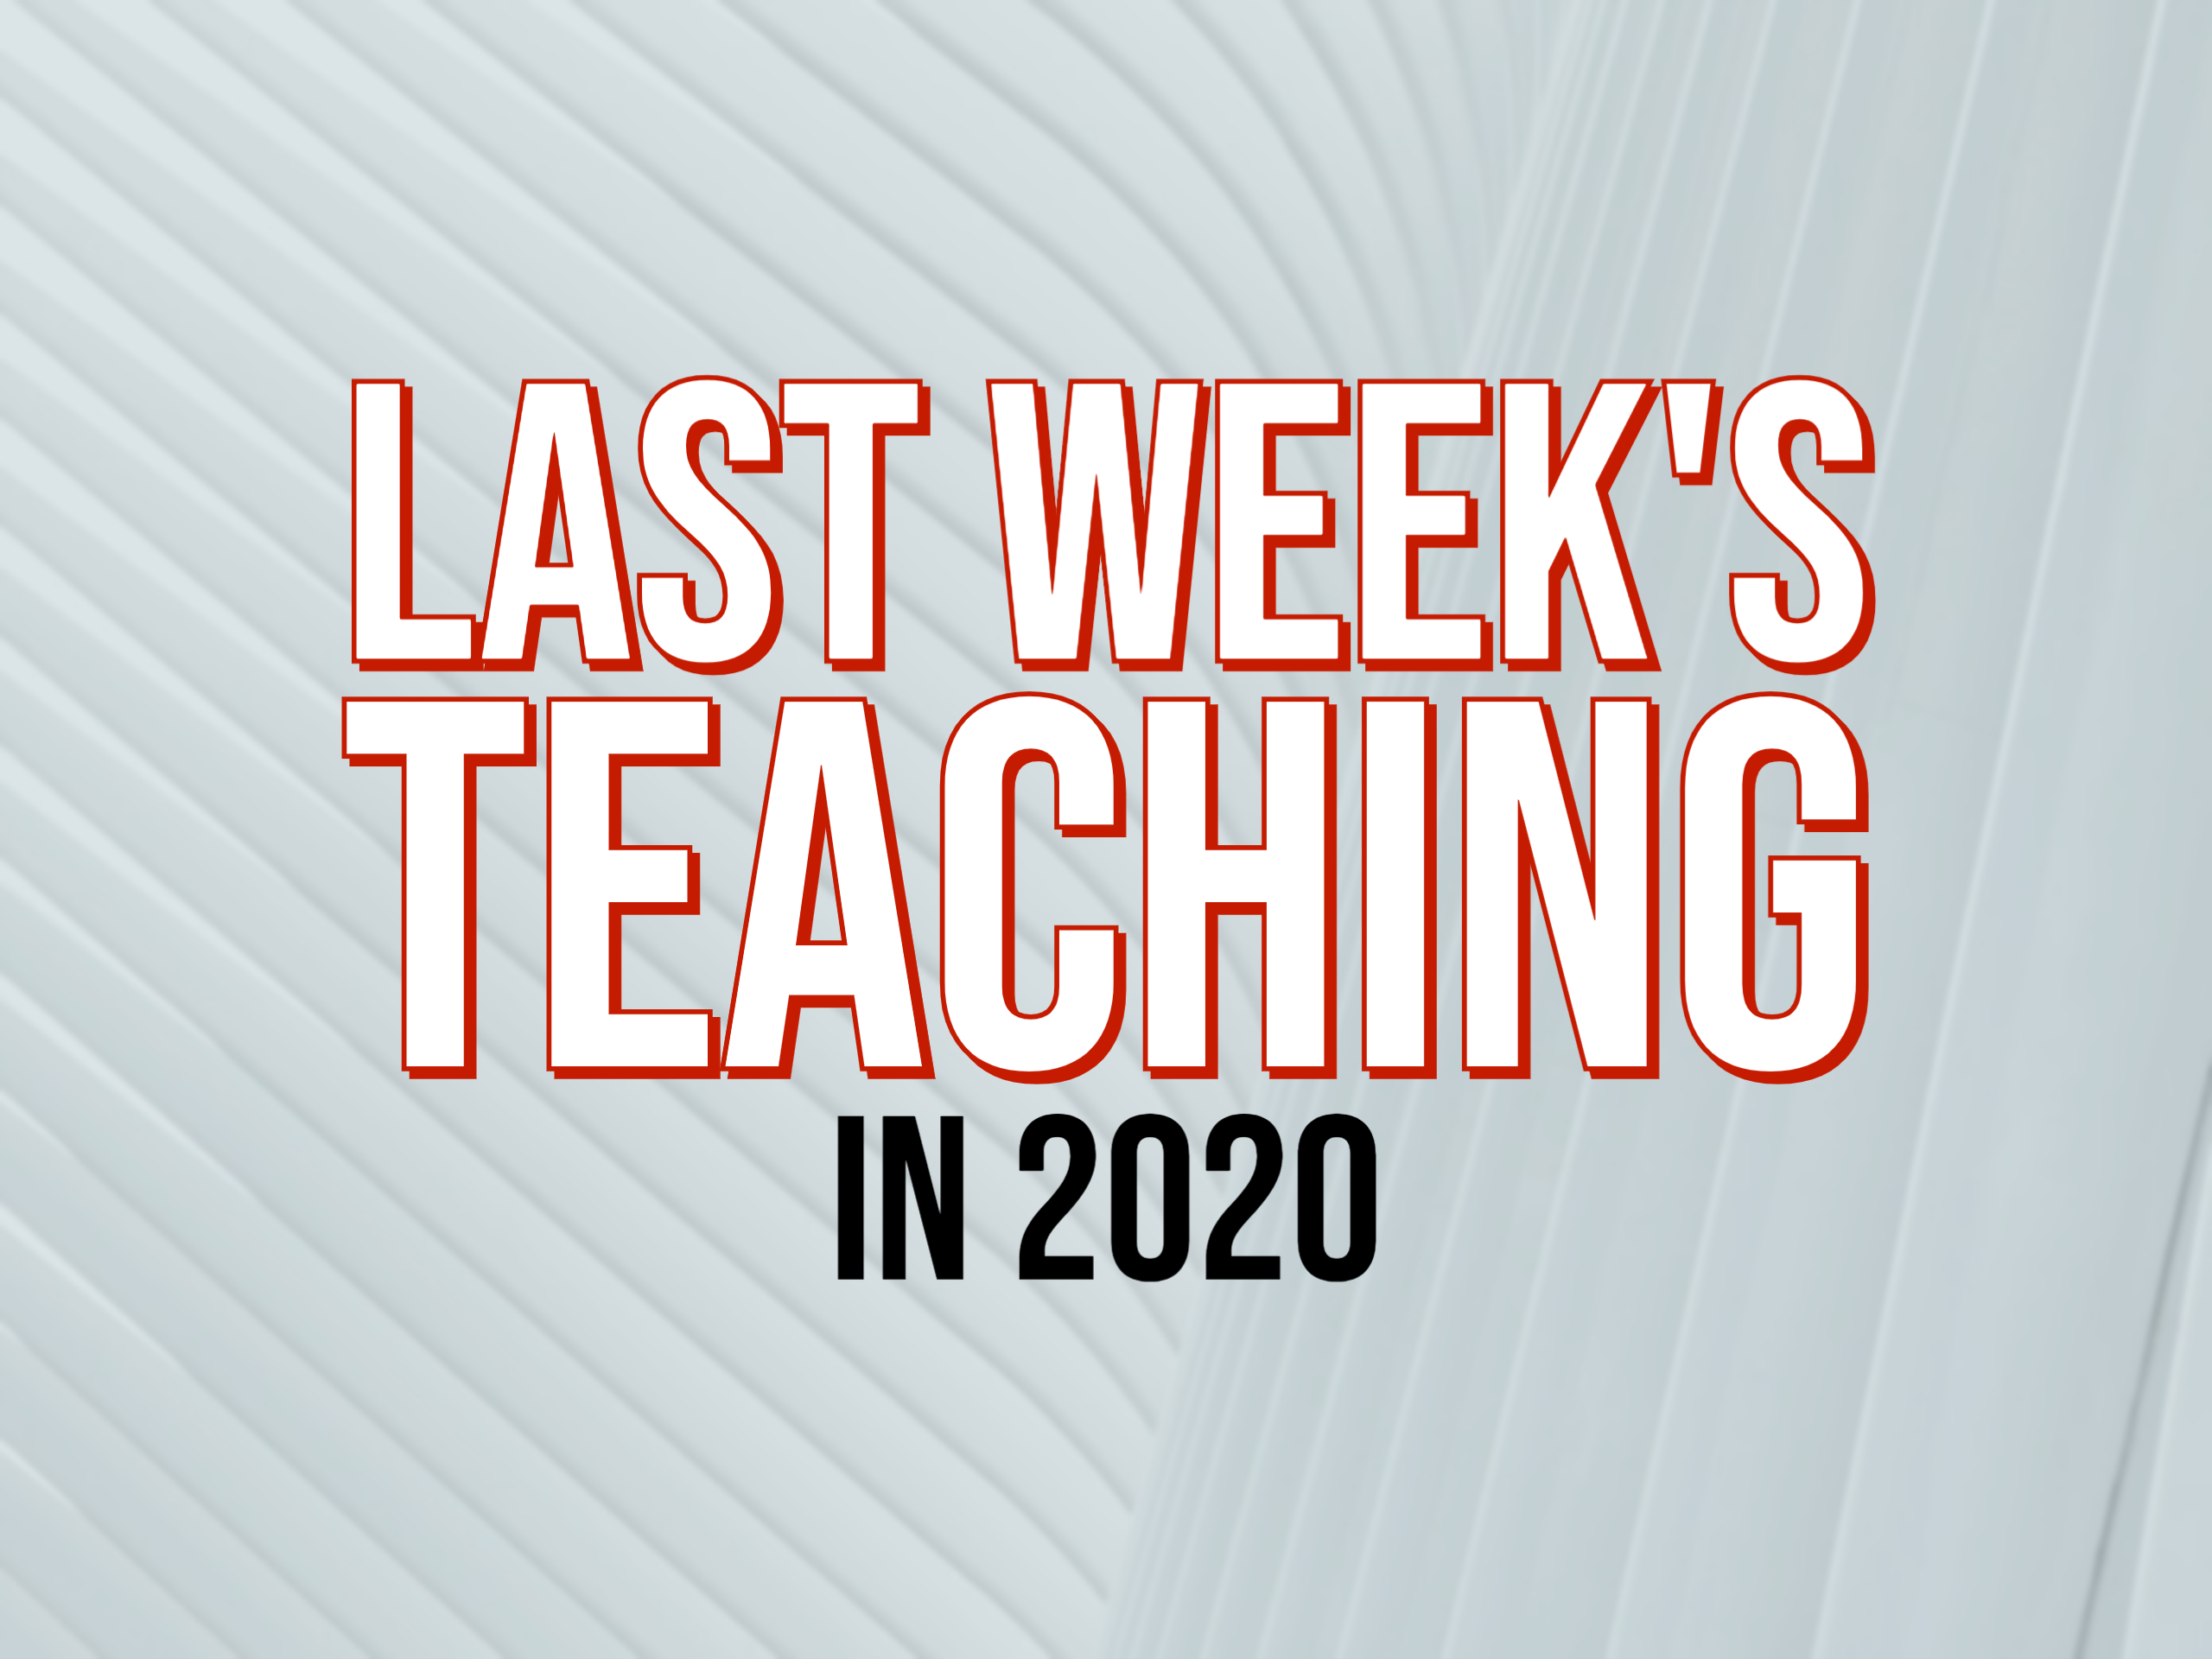 Last Week's Teaching in 2020